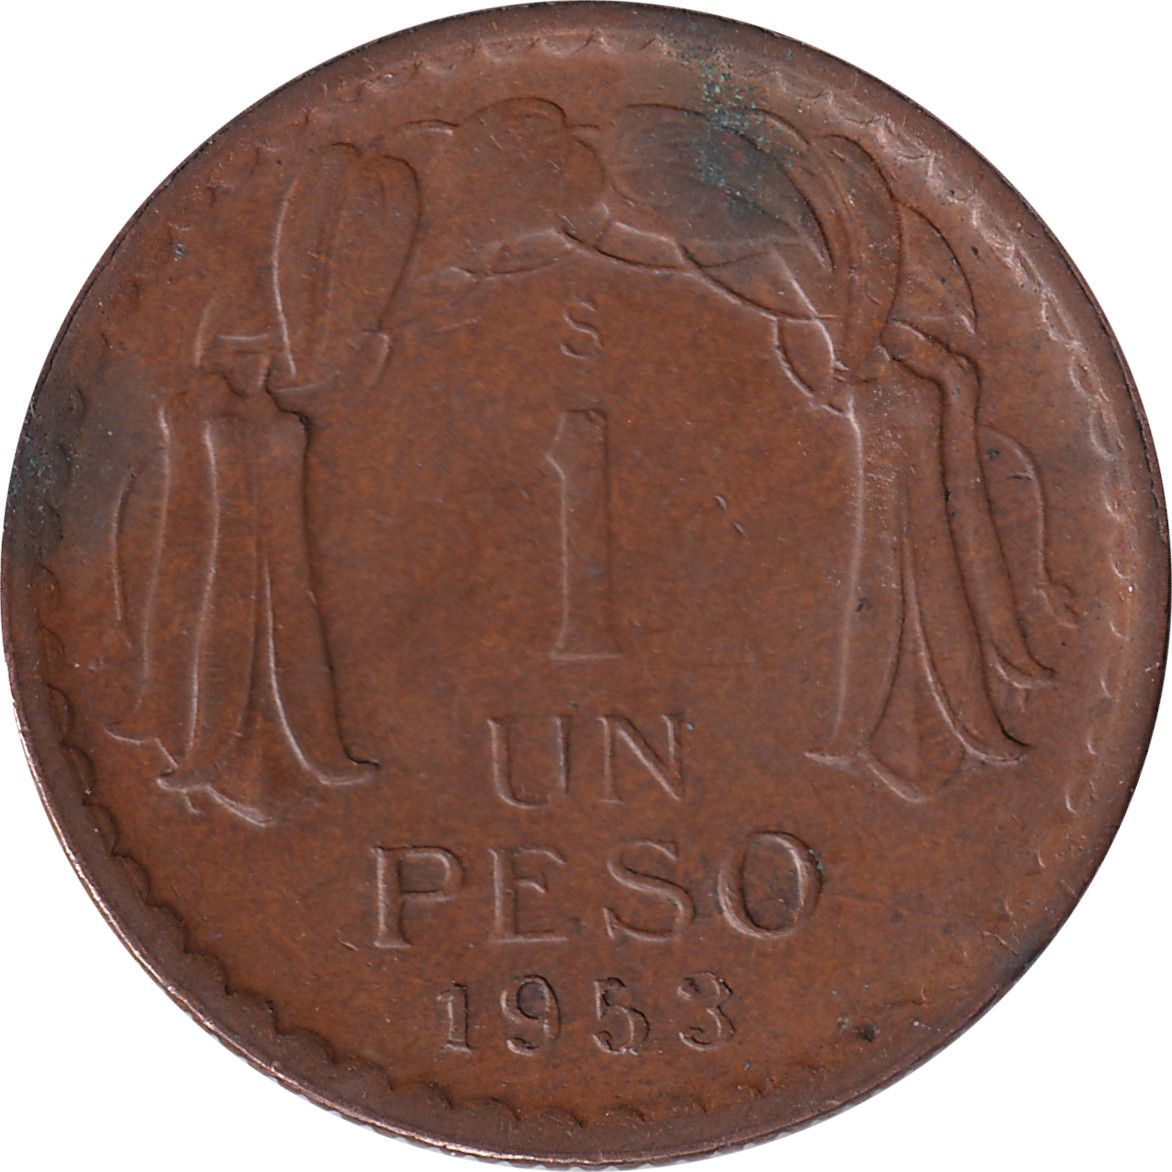 1 peso - Chaucha - Bronze